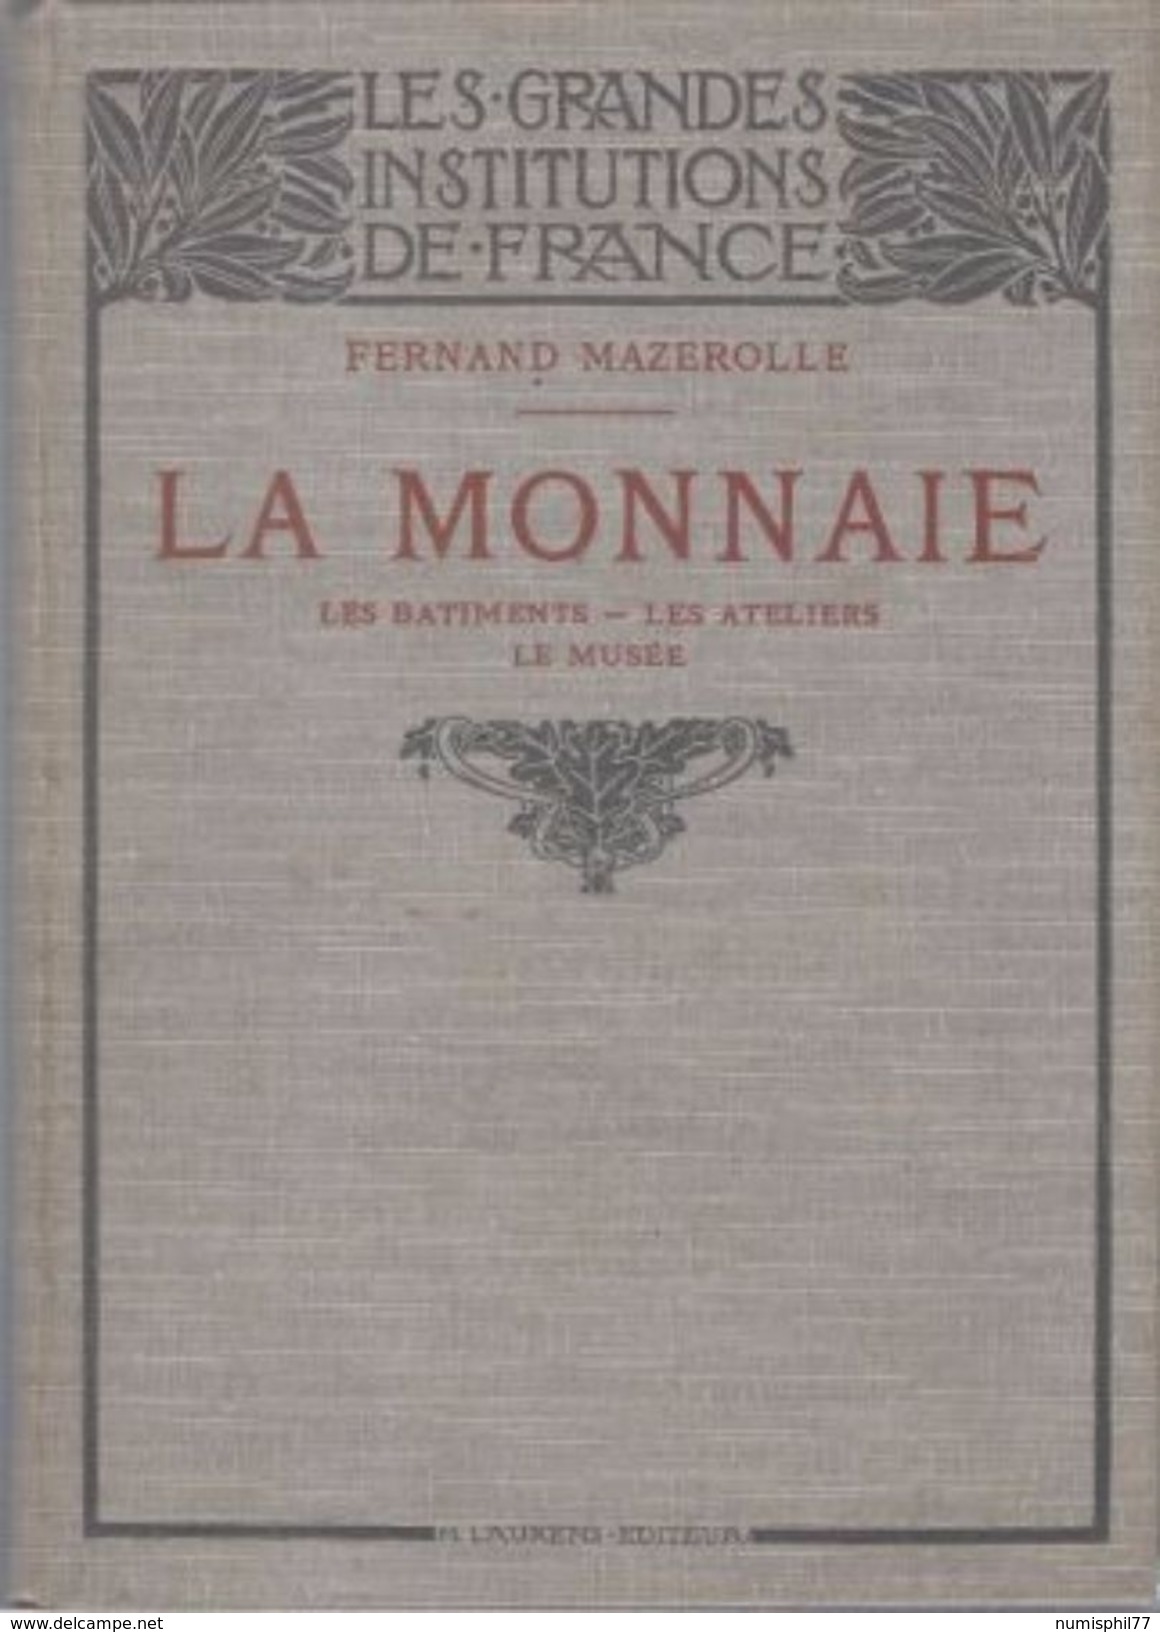 LIBRAIRIE NUMISMATIQUE - Les Grandes Institutions De France La Monnaie Par Fernand Mazerolle - 1907 - Livres & Logiciels